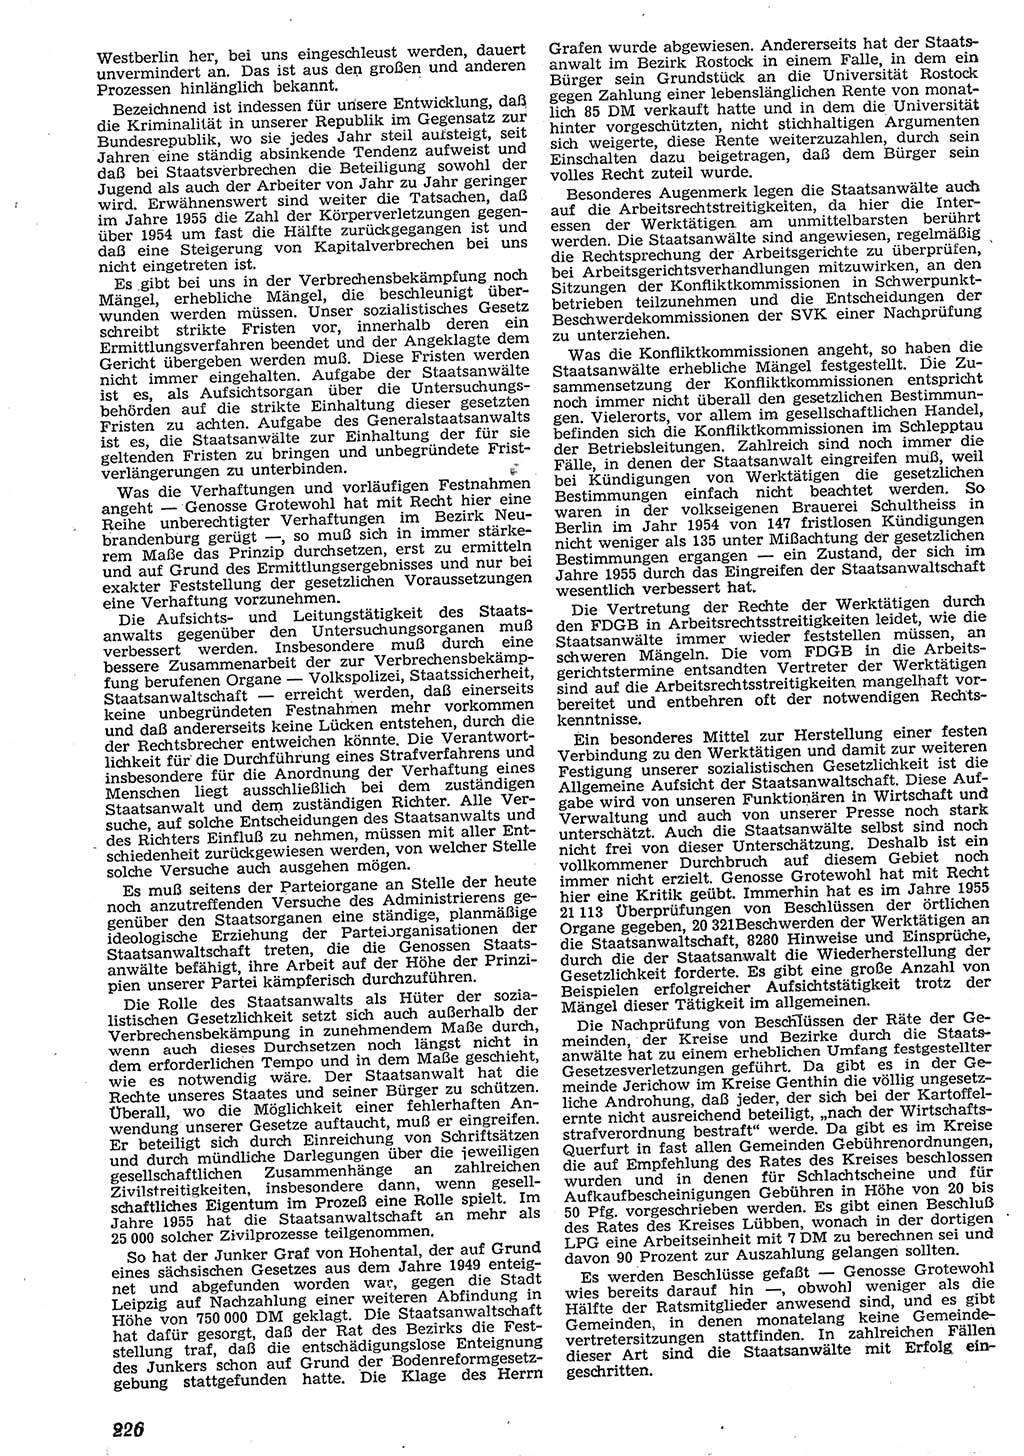 Neue Justiz (NJ), Zeitschrift für Recht und Rechtswissenschaft [Deutsche Demokratische Republik (DDR)], 10. Jahrgang 1956, Seite 226 (NJ DDR 1956, S. 226)